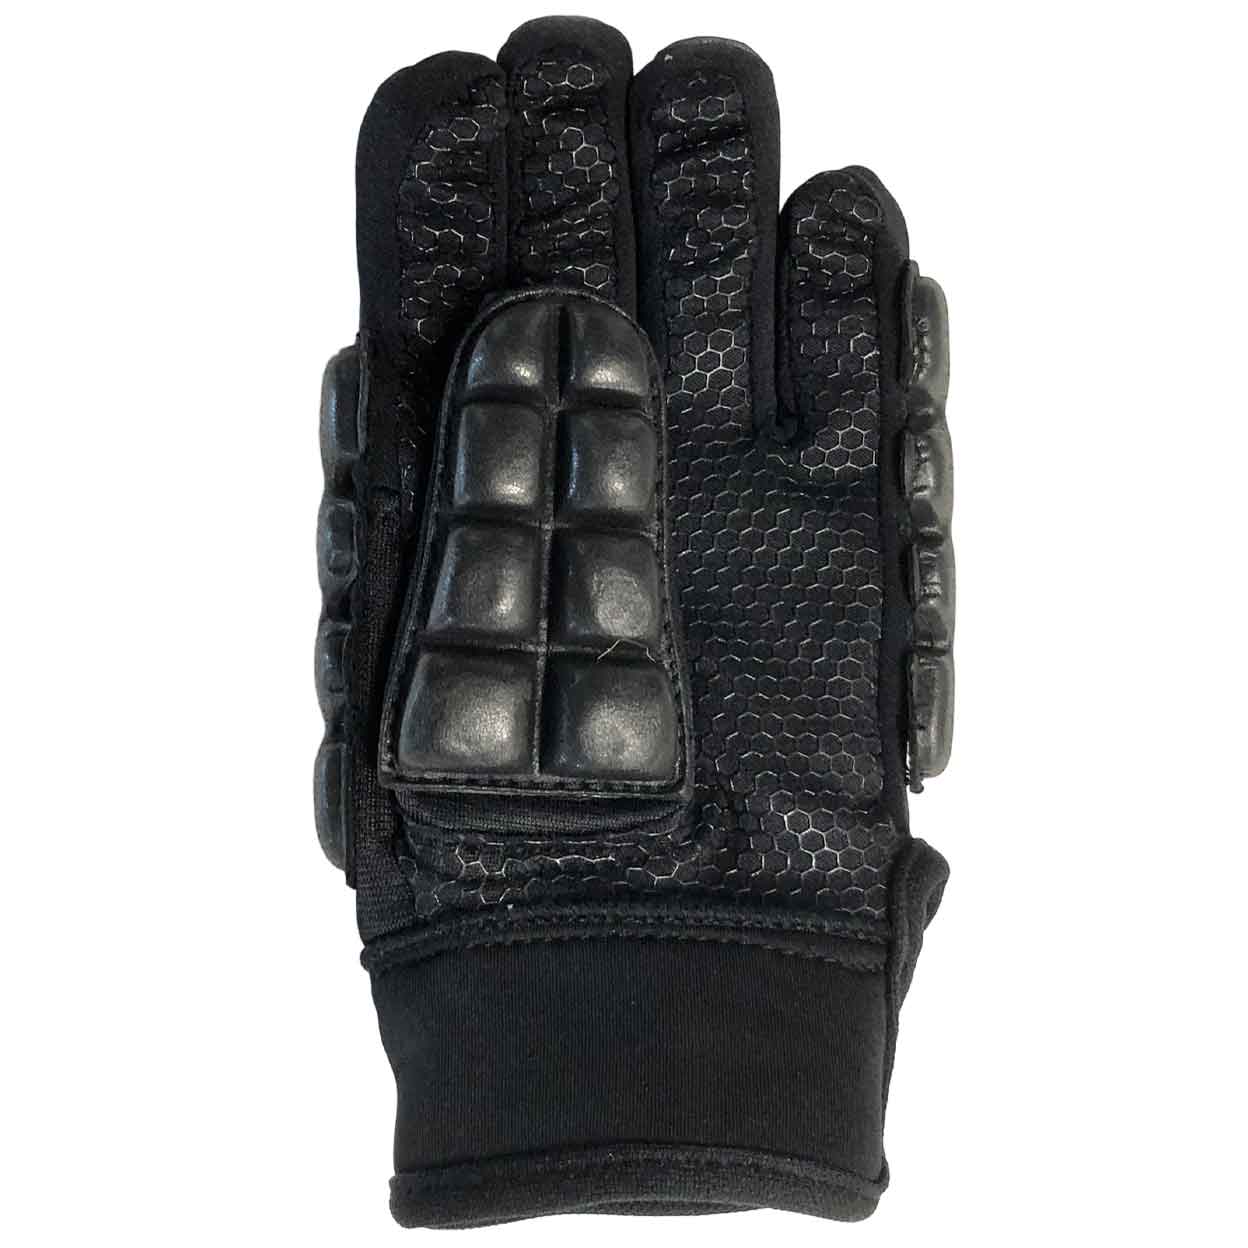 Total TK 2.1 Indoor Glove